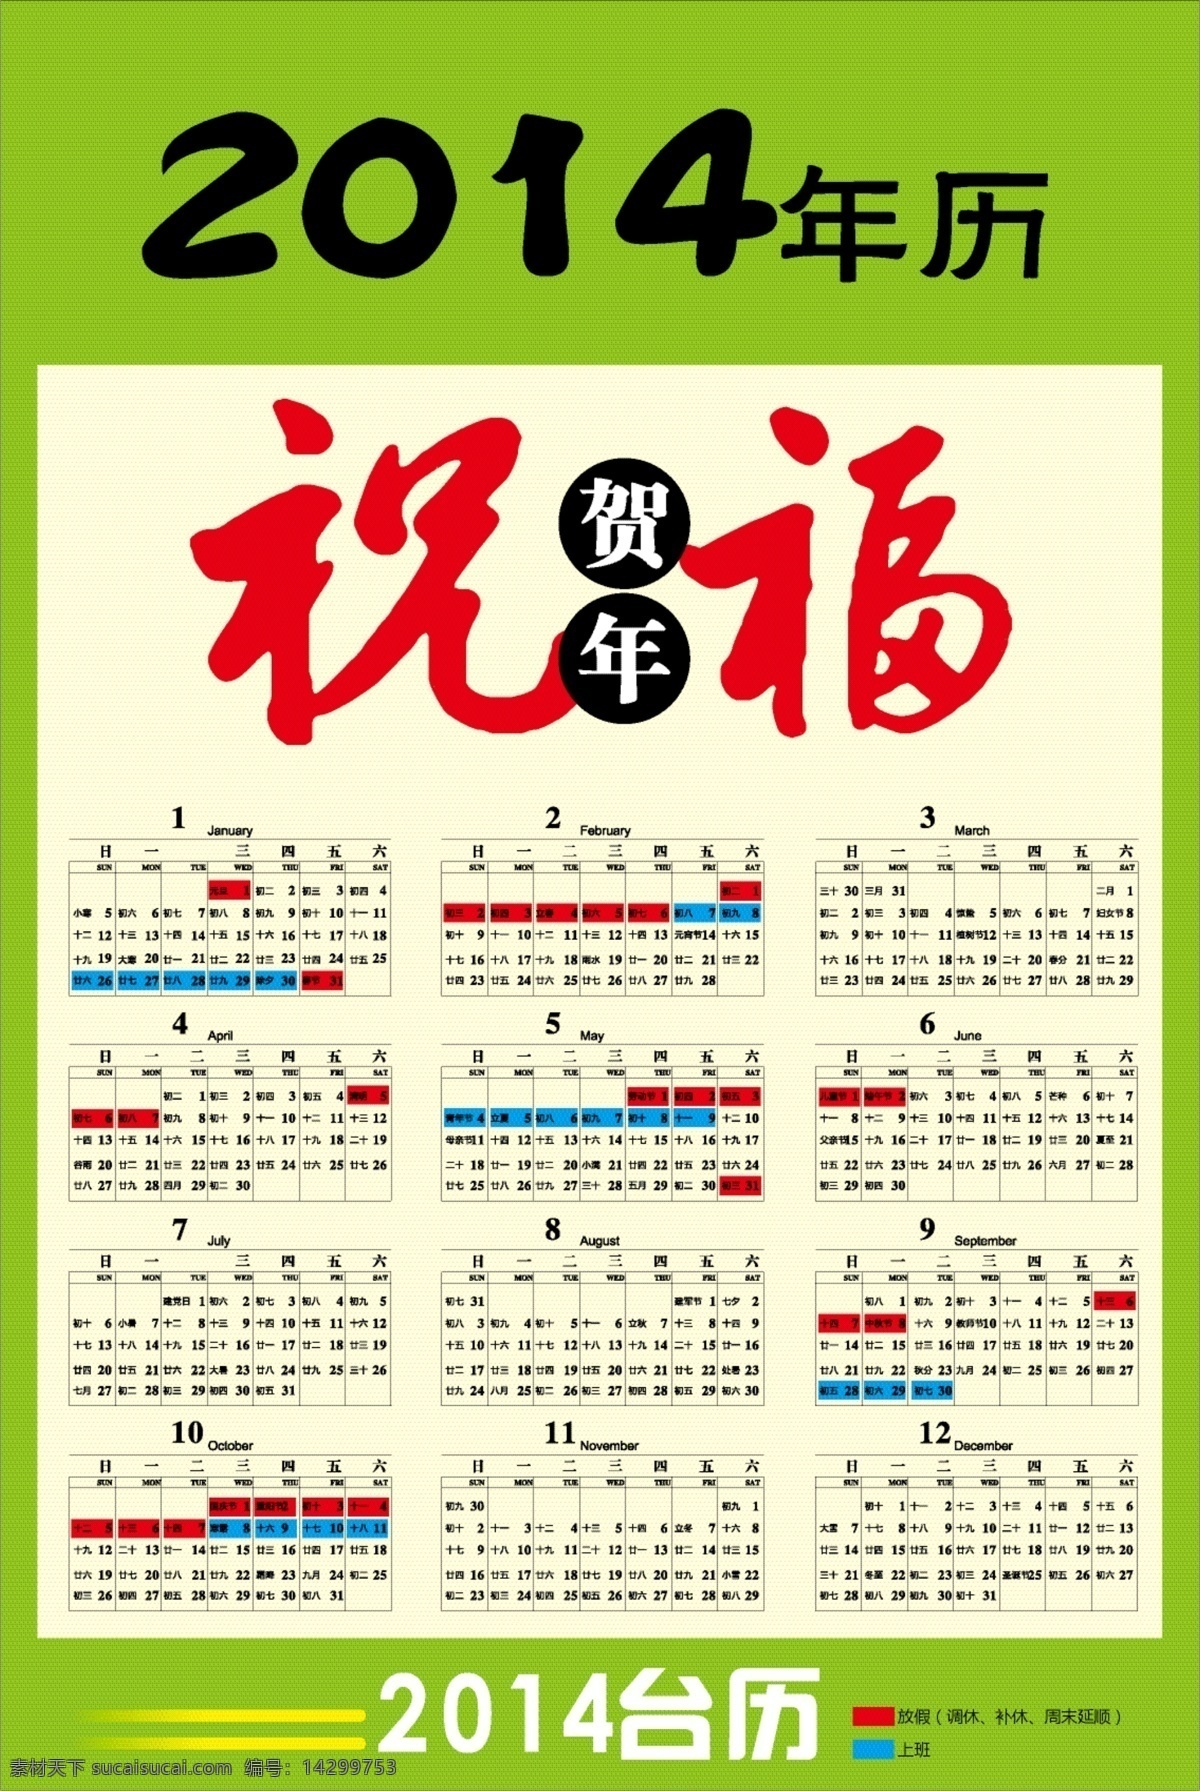 2014 2014日历 春节 节日素材 矢量图 台历 年历 带 节假日 矢量 模板下载 2015羊年